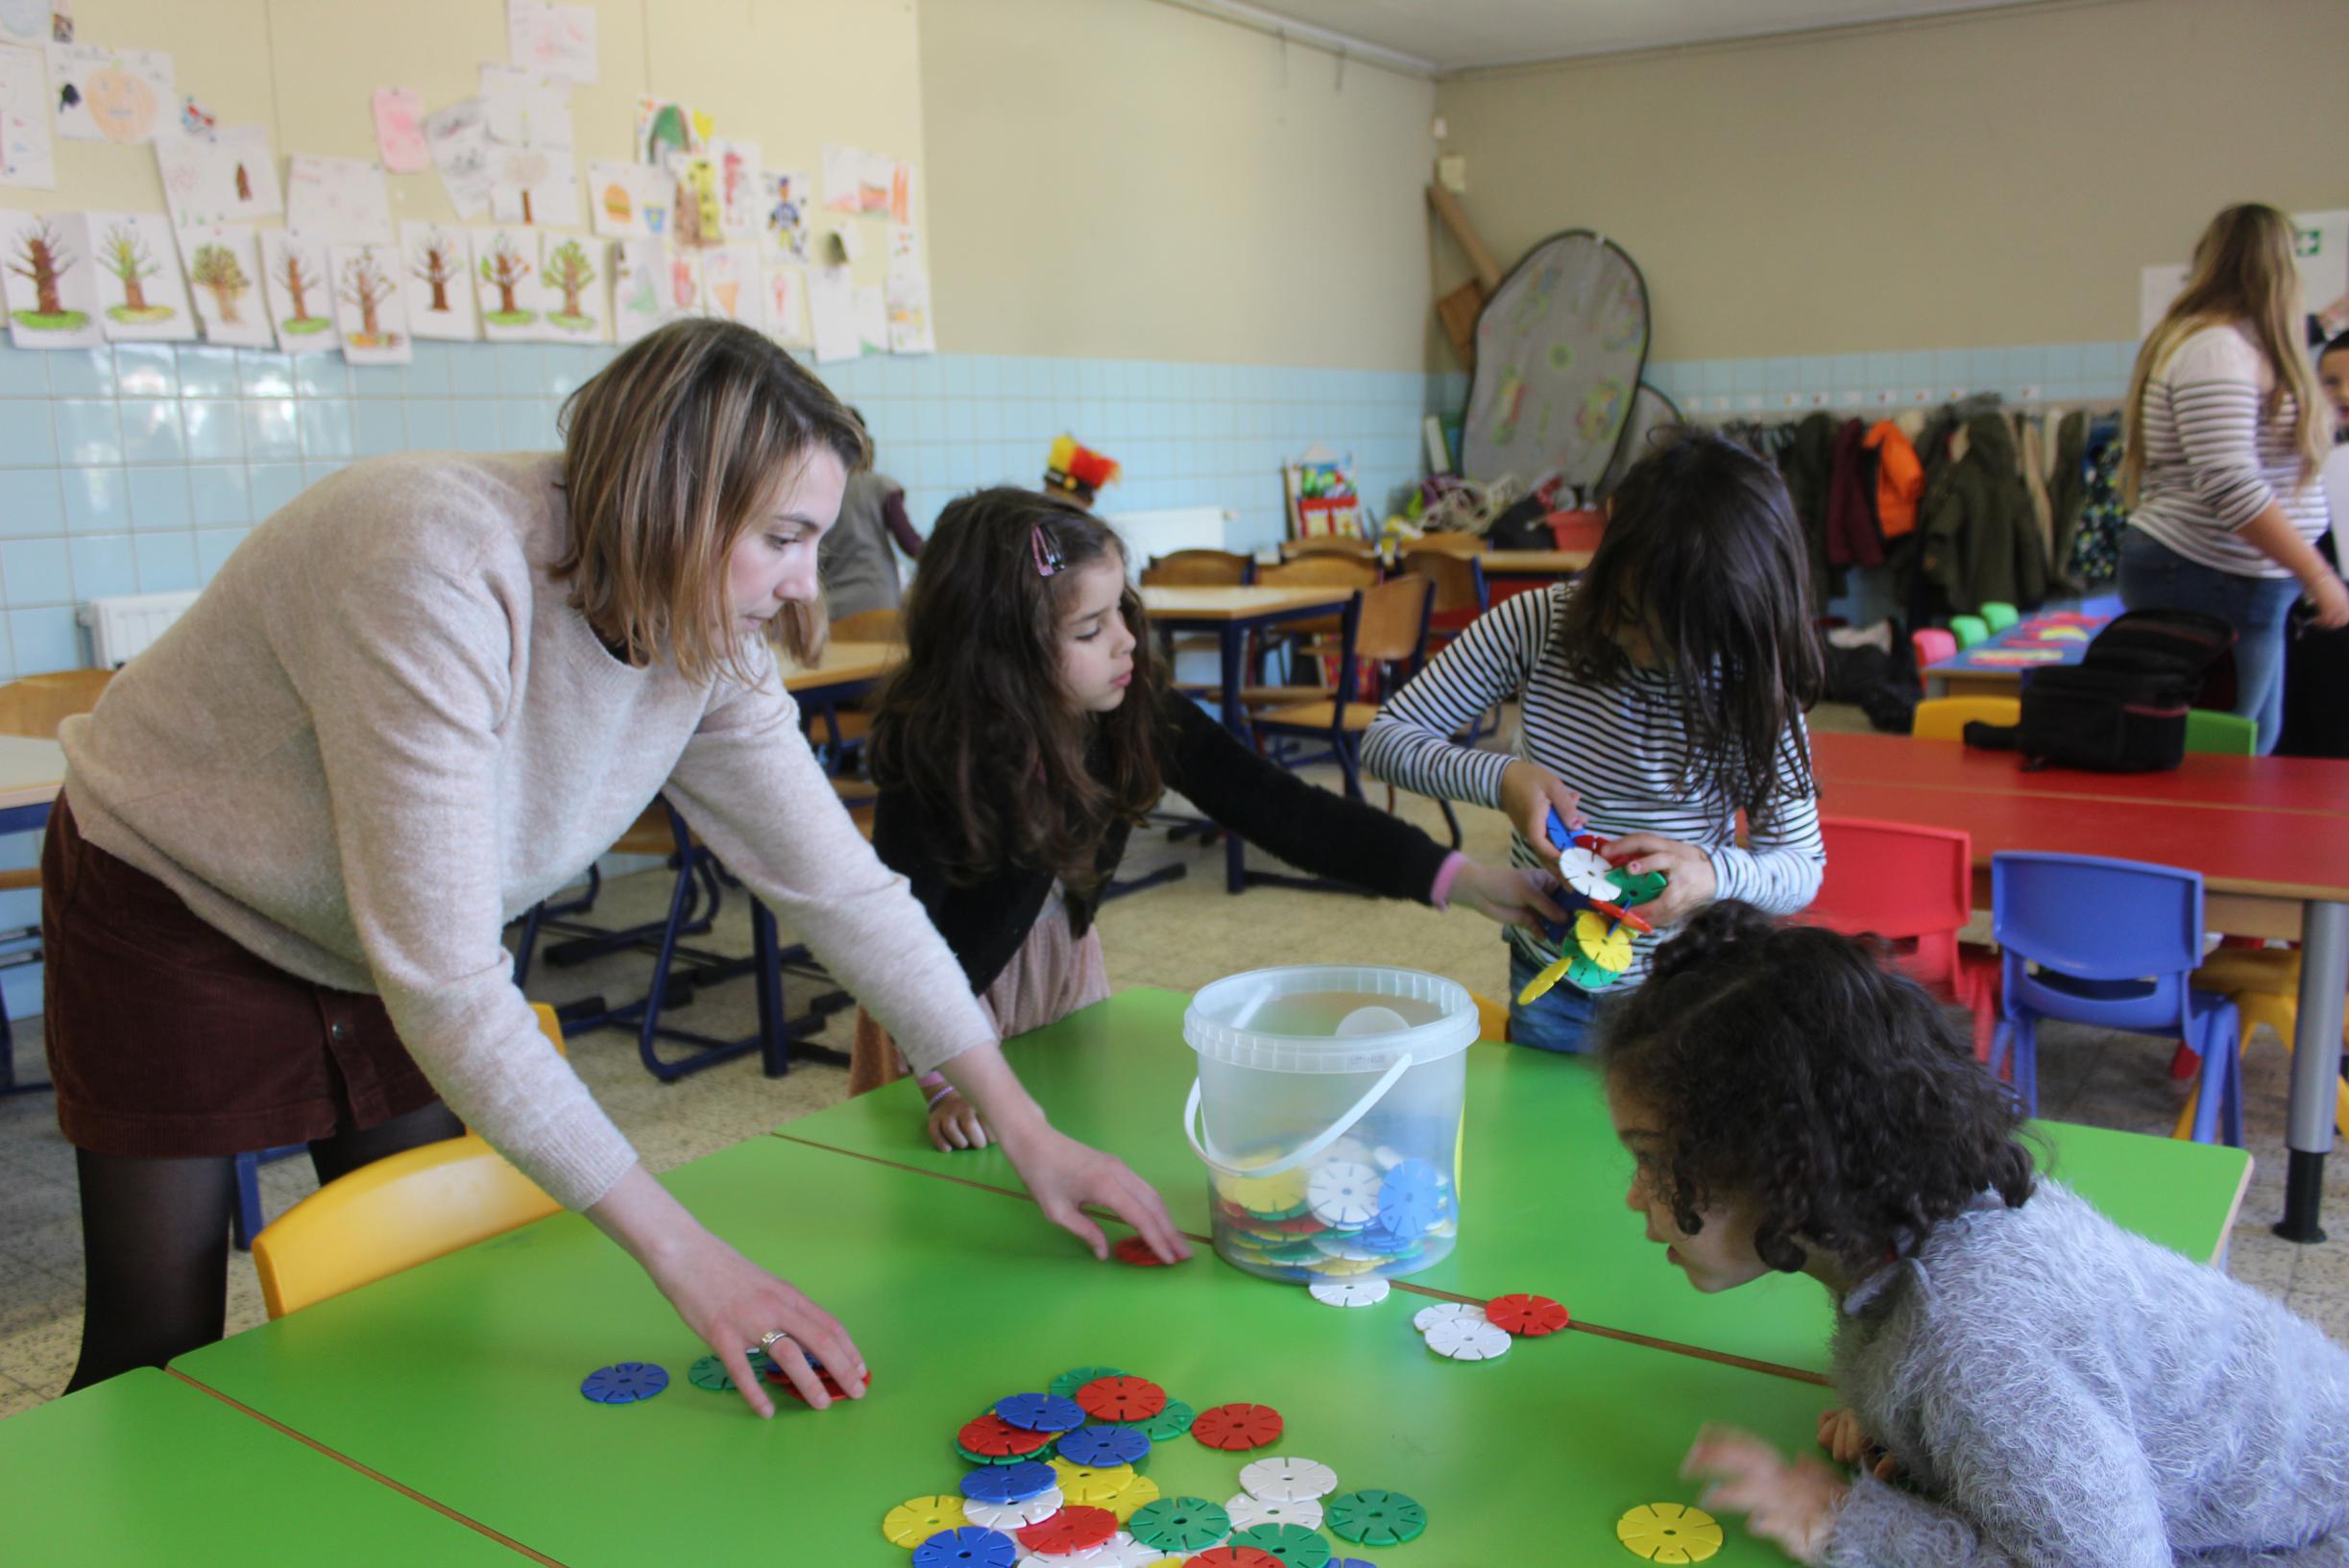 Kinderopvang 3Wplus organiseert tweede jobdag: “Geschikte kandidaten kunnen  meteen contract krijgen”